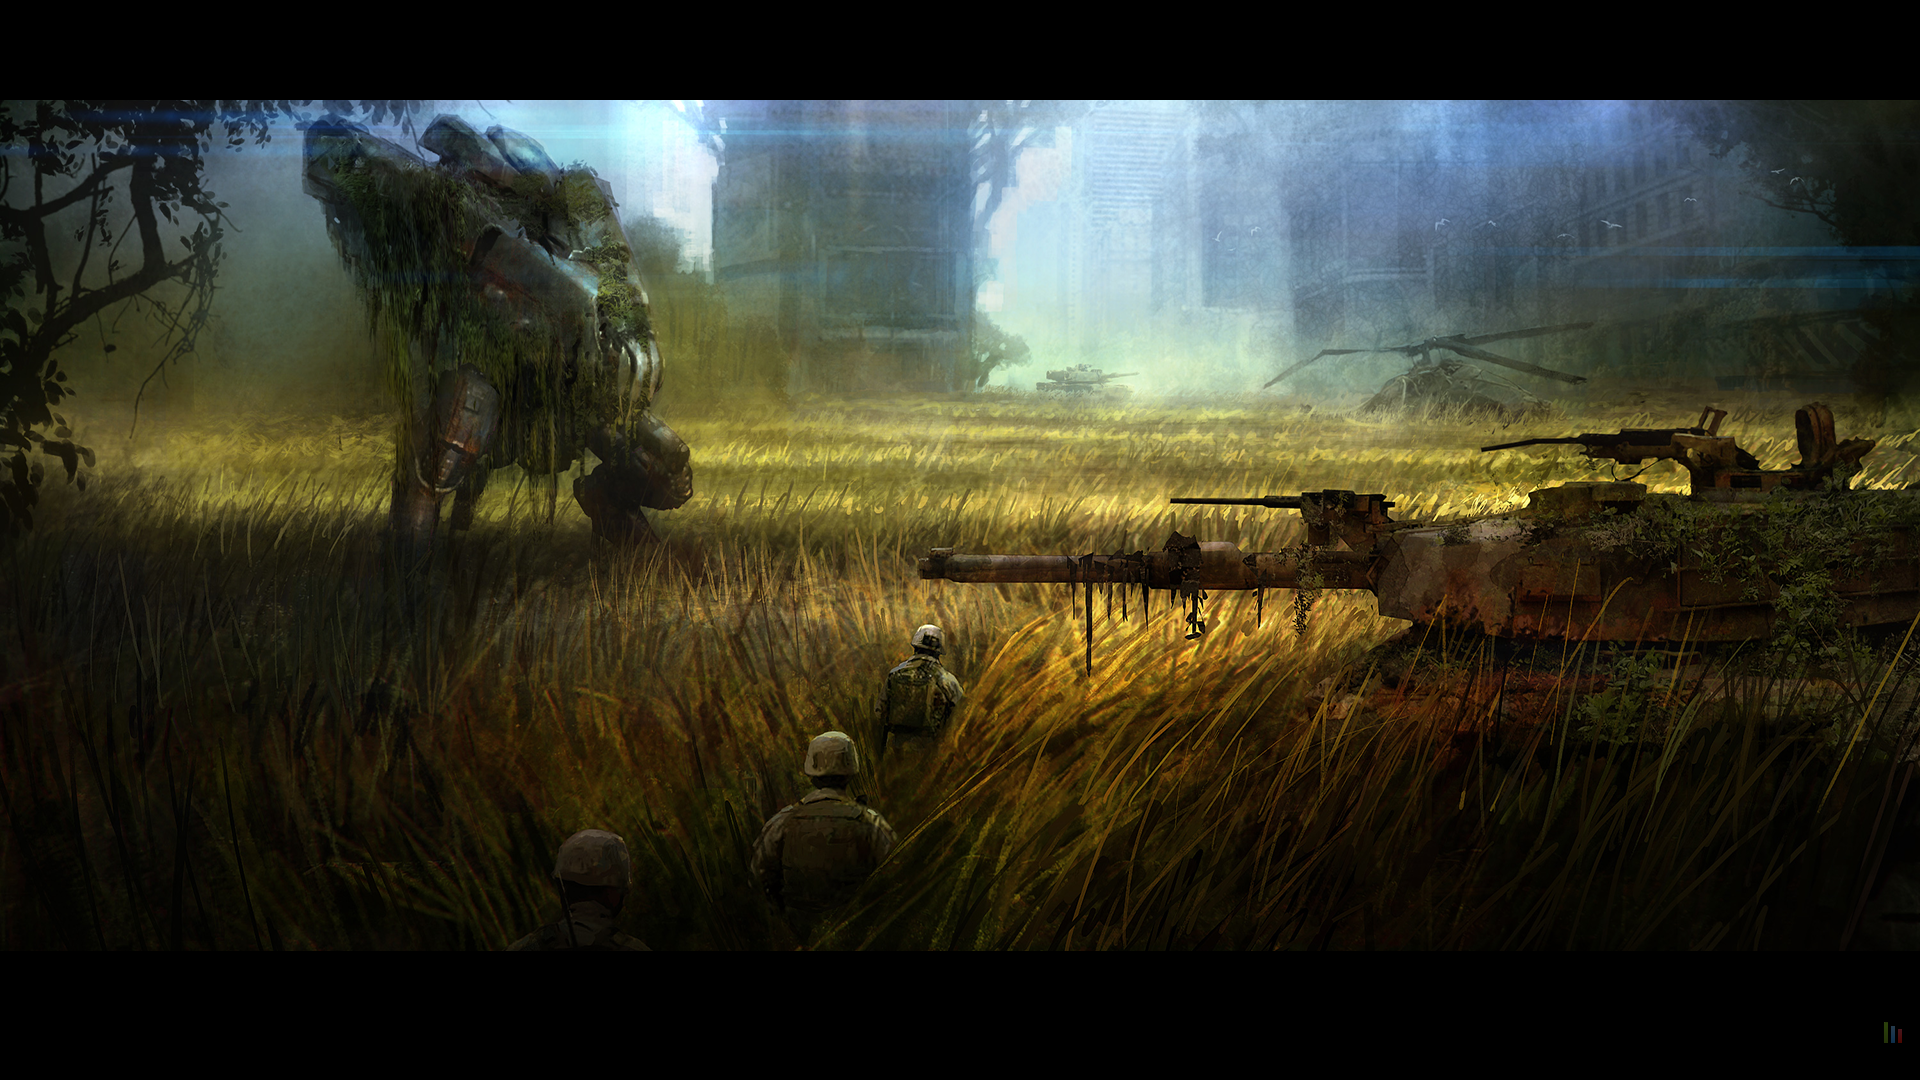 Crysis 3 - Grass Fields concept art